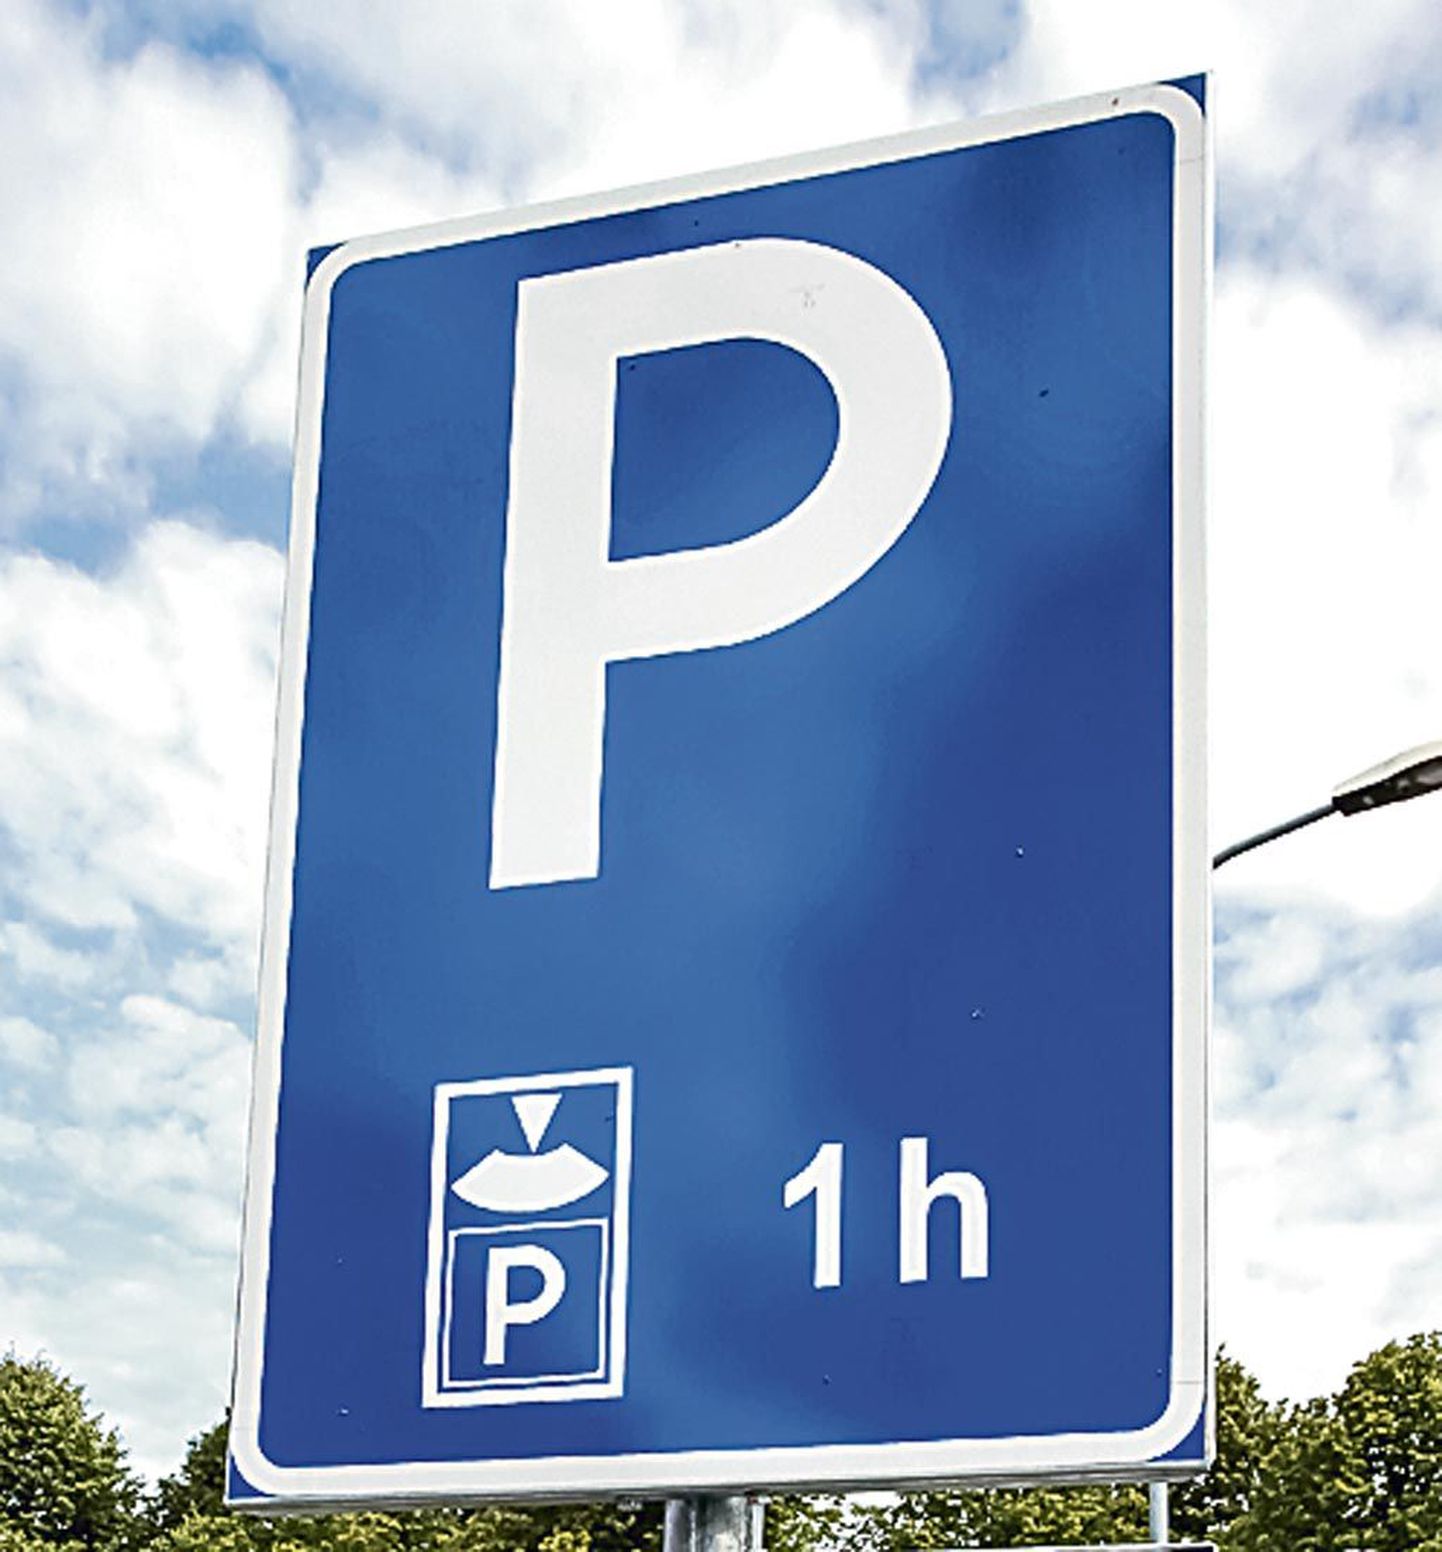 Parkla kuulub Rannastaadioni juurde, mis seda võistlusteks kasutab. Muul ajal saavad seal parkida rannalised.